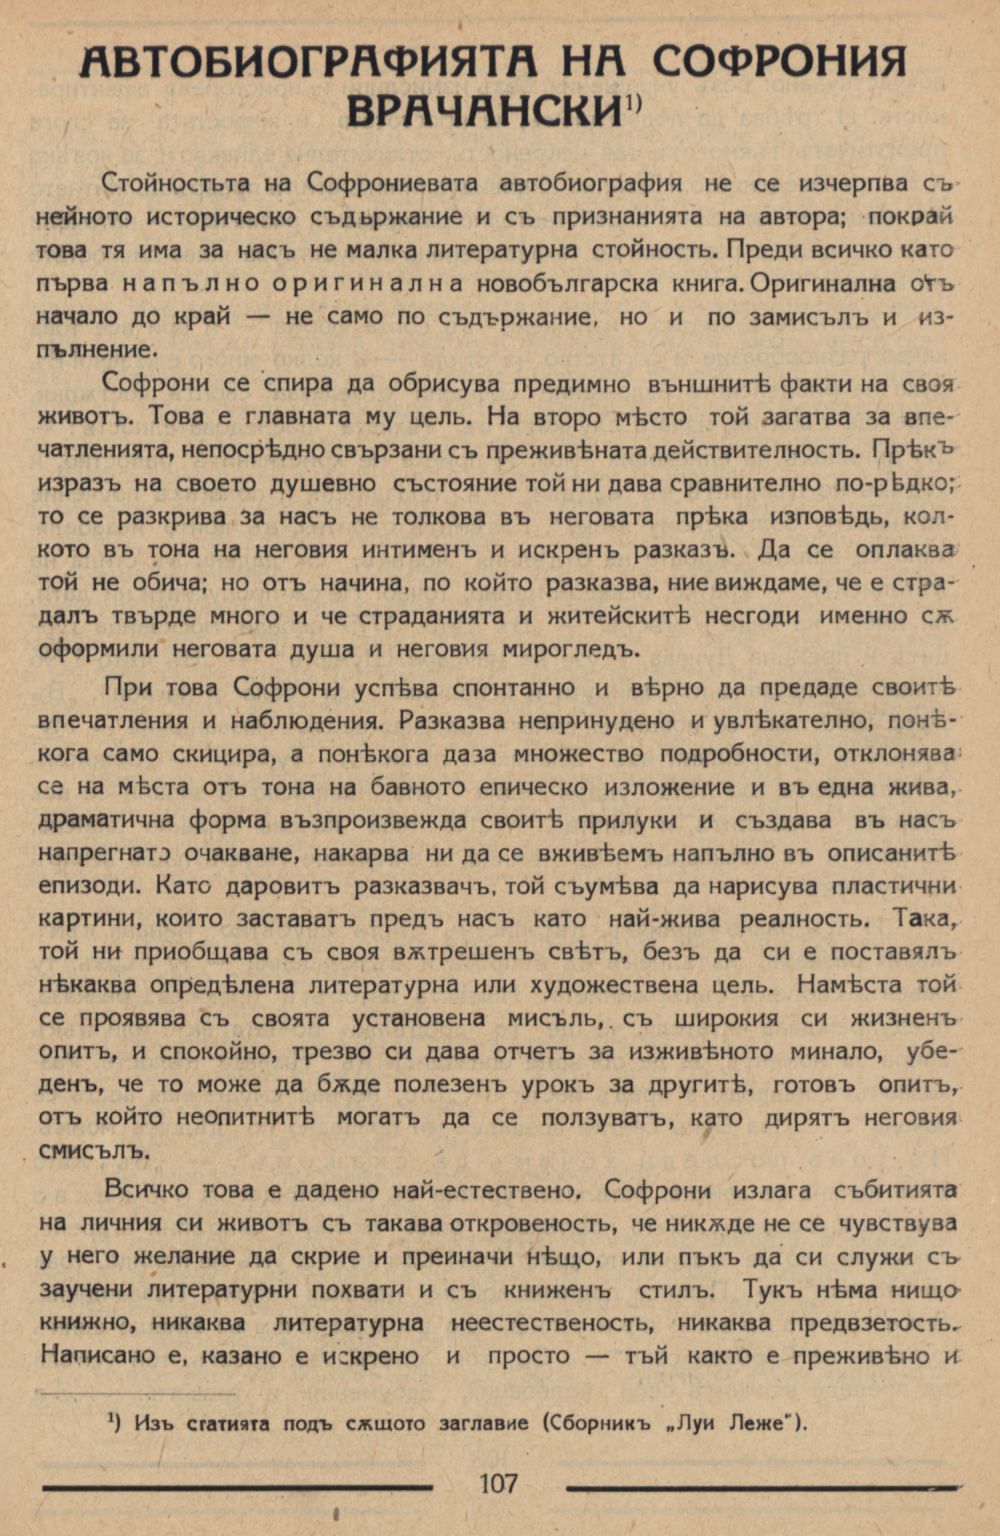 Автобиографията на Софрония Врачански